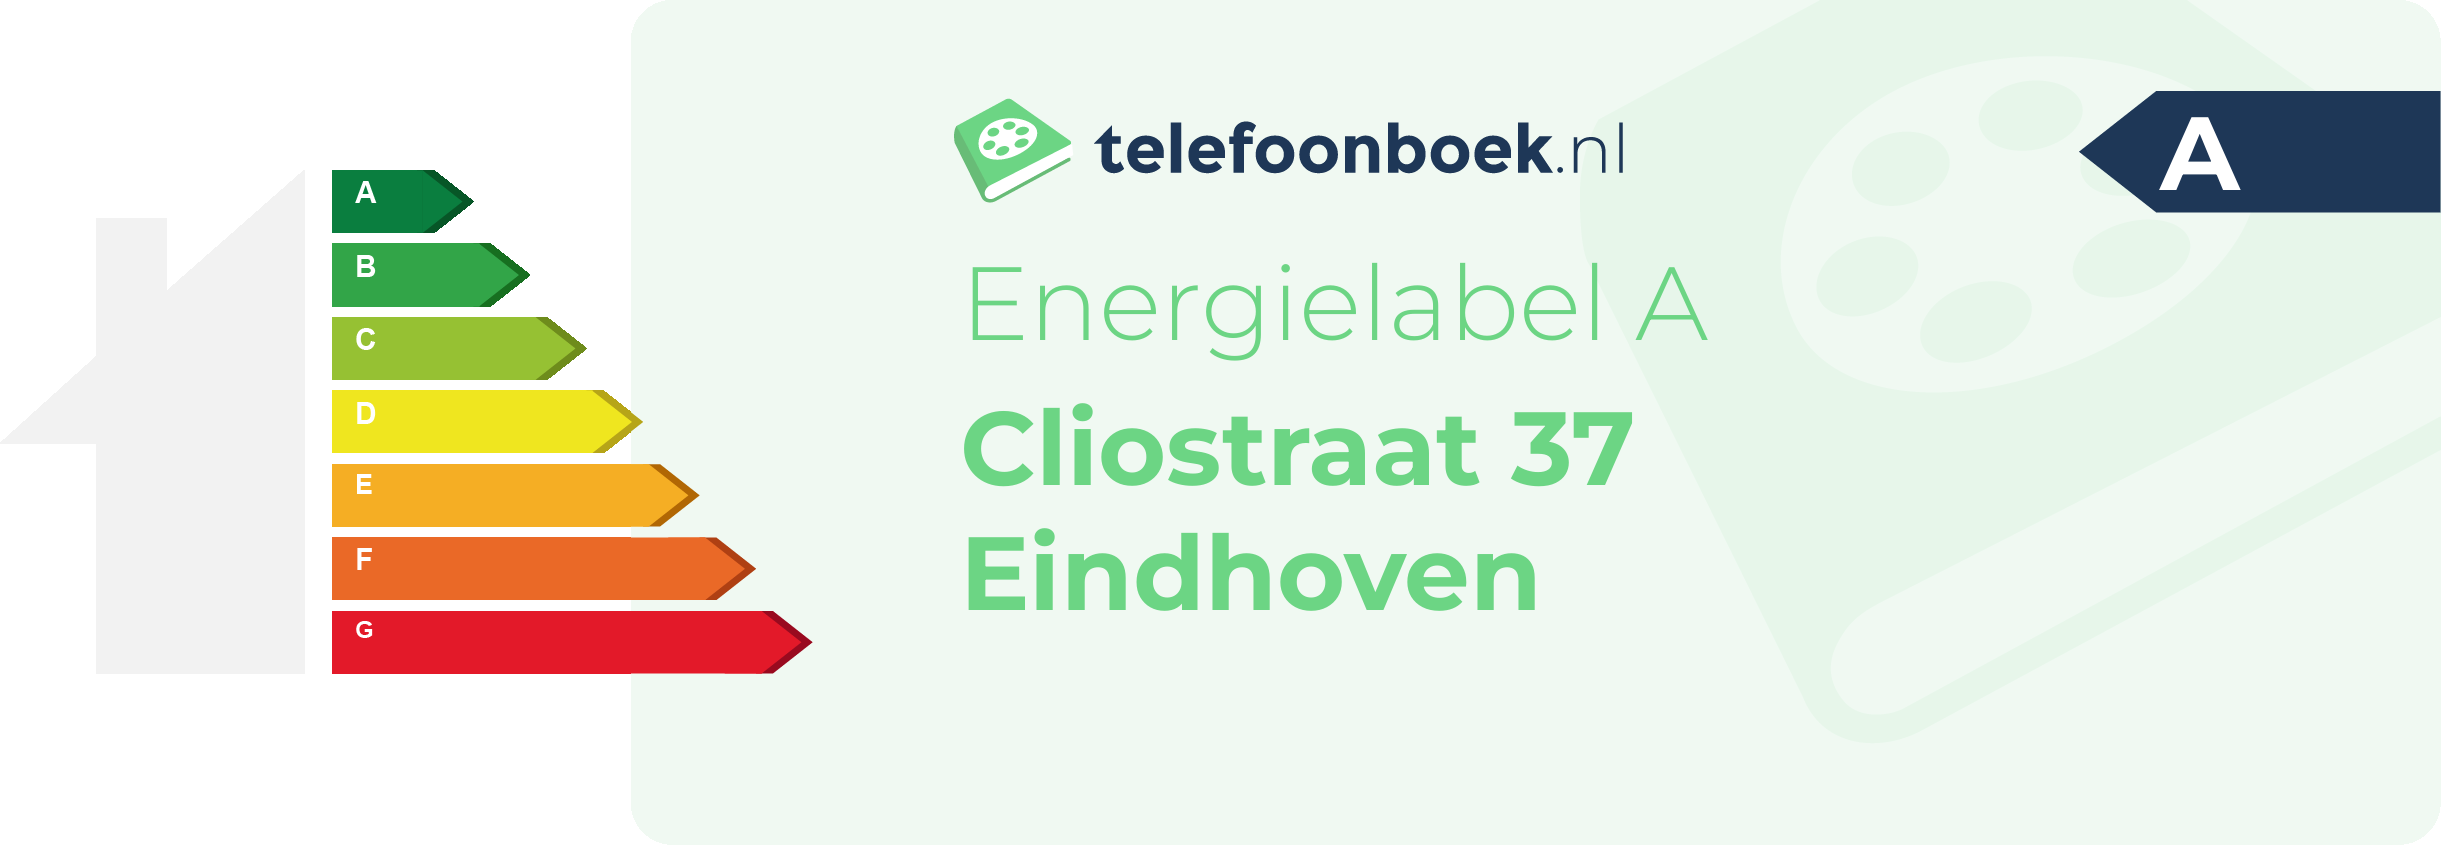 Energielabel Cliostraat 37 Eindhoven